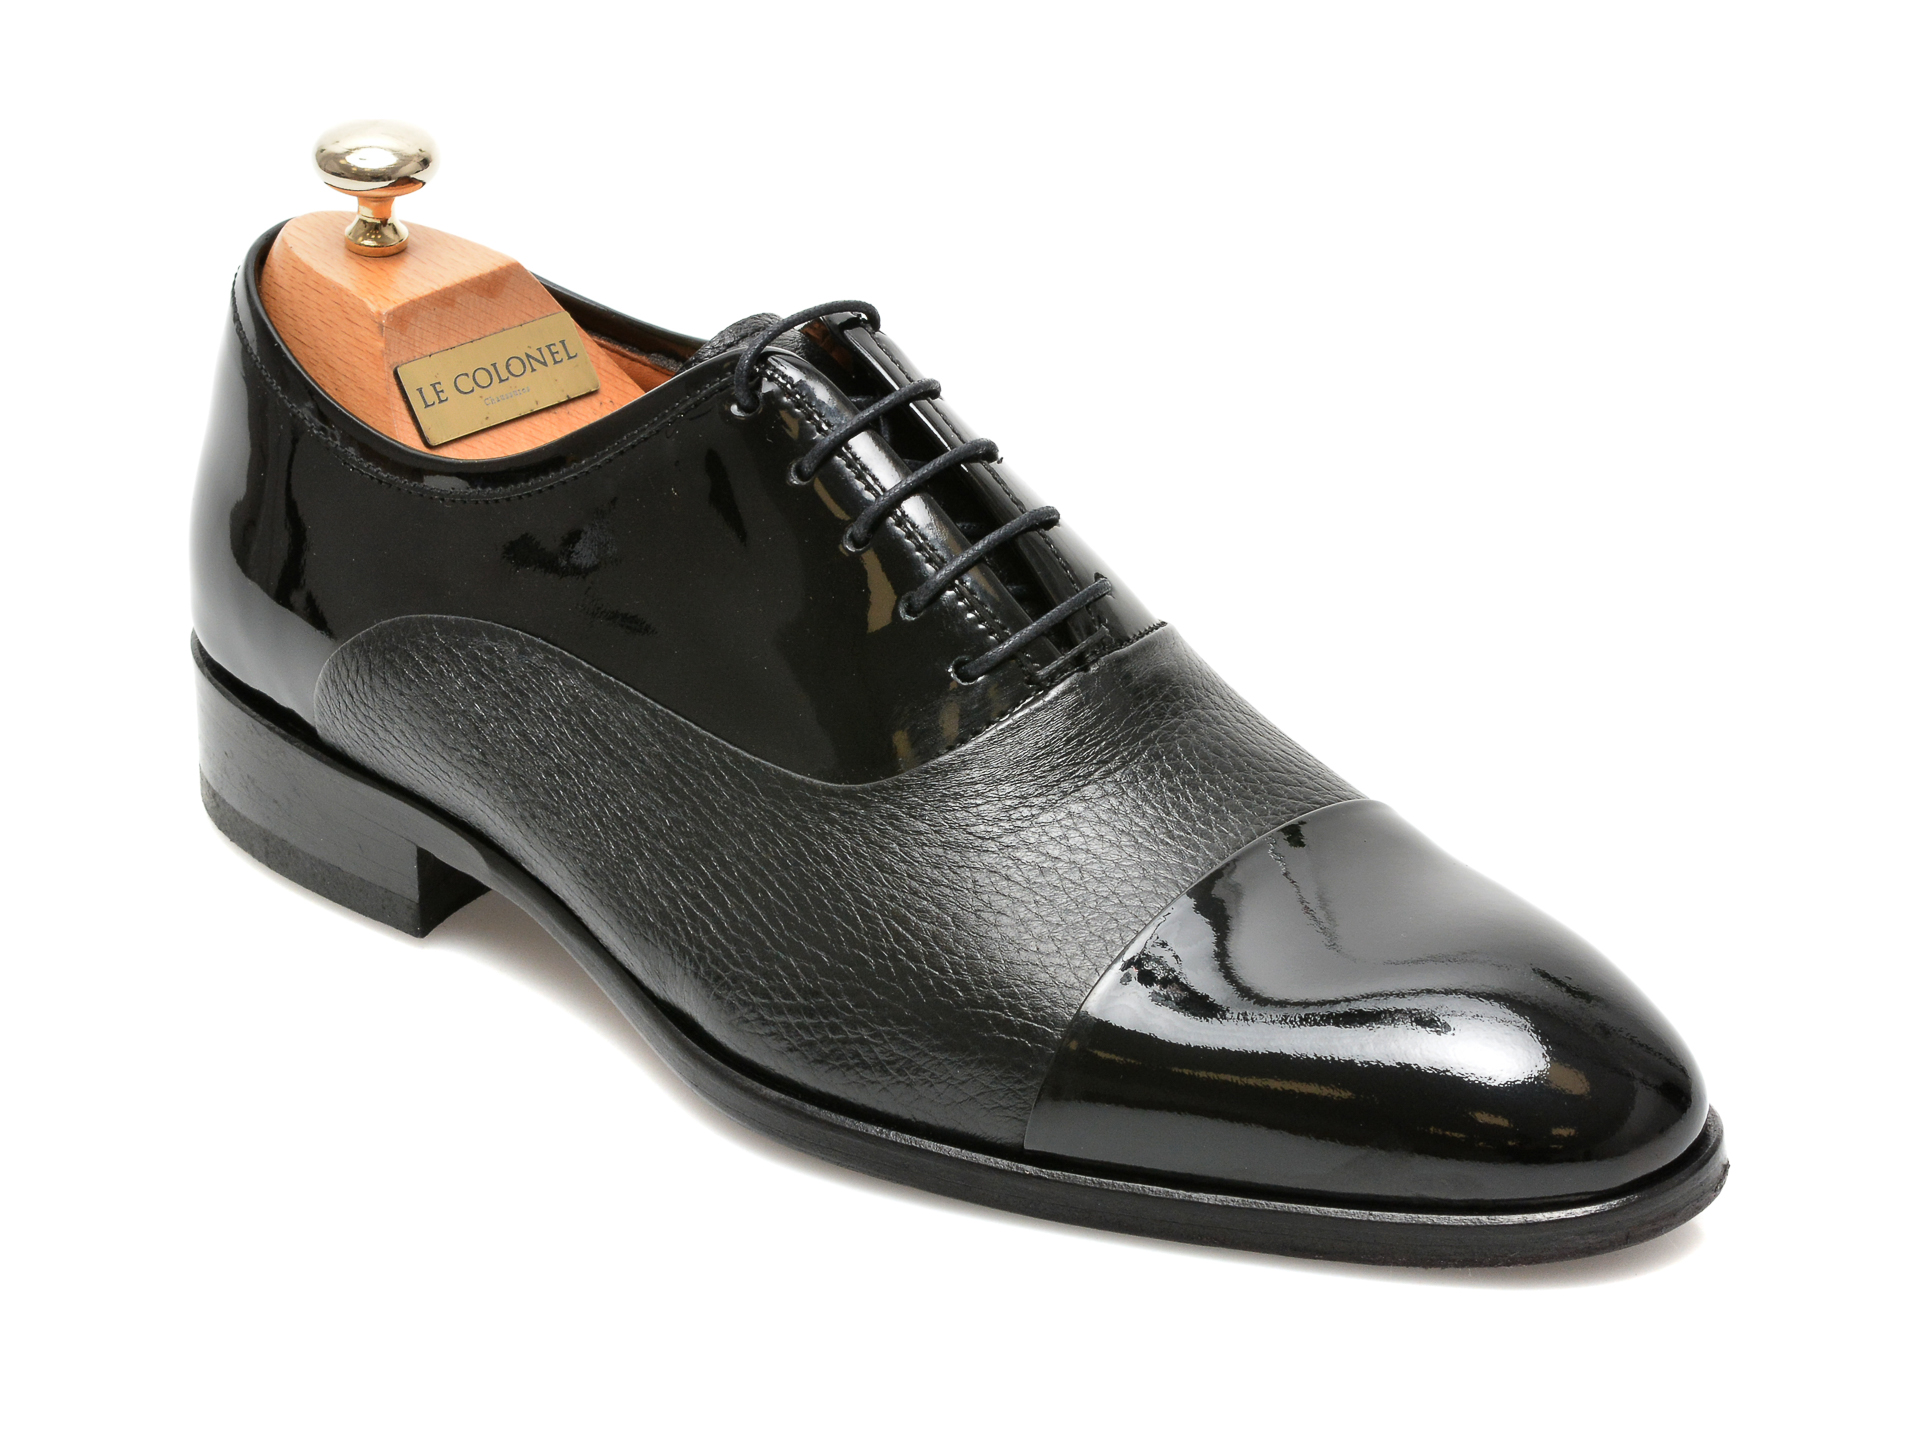 Pantofi LE COLONEL negri, 327117, din piele naturala lacuita 2023 ❤️ Pret Super Black Friday otter.ro imagine noua 2022